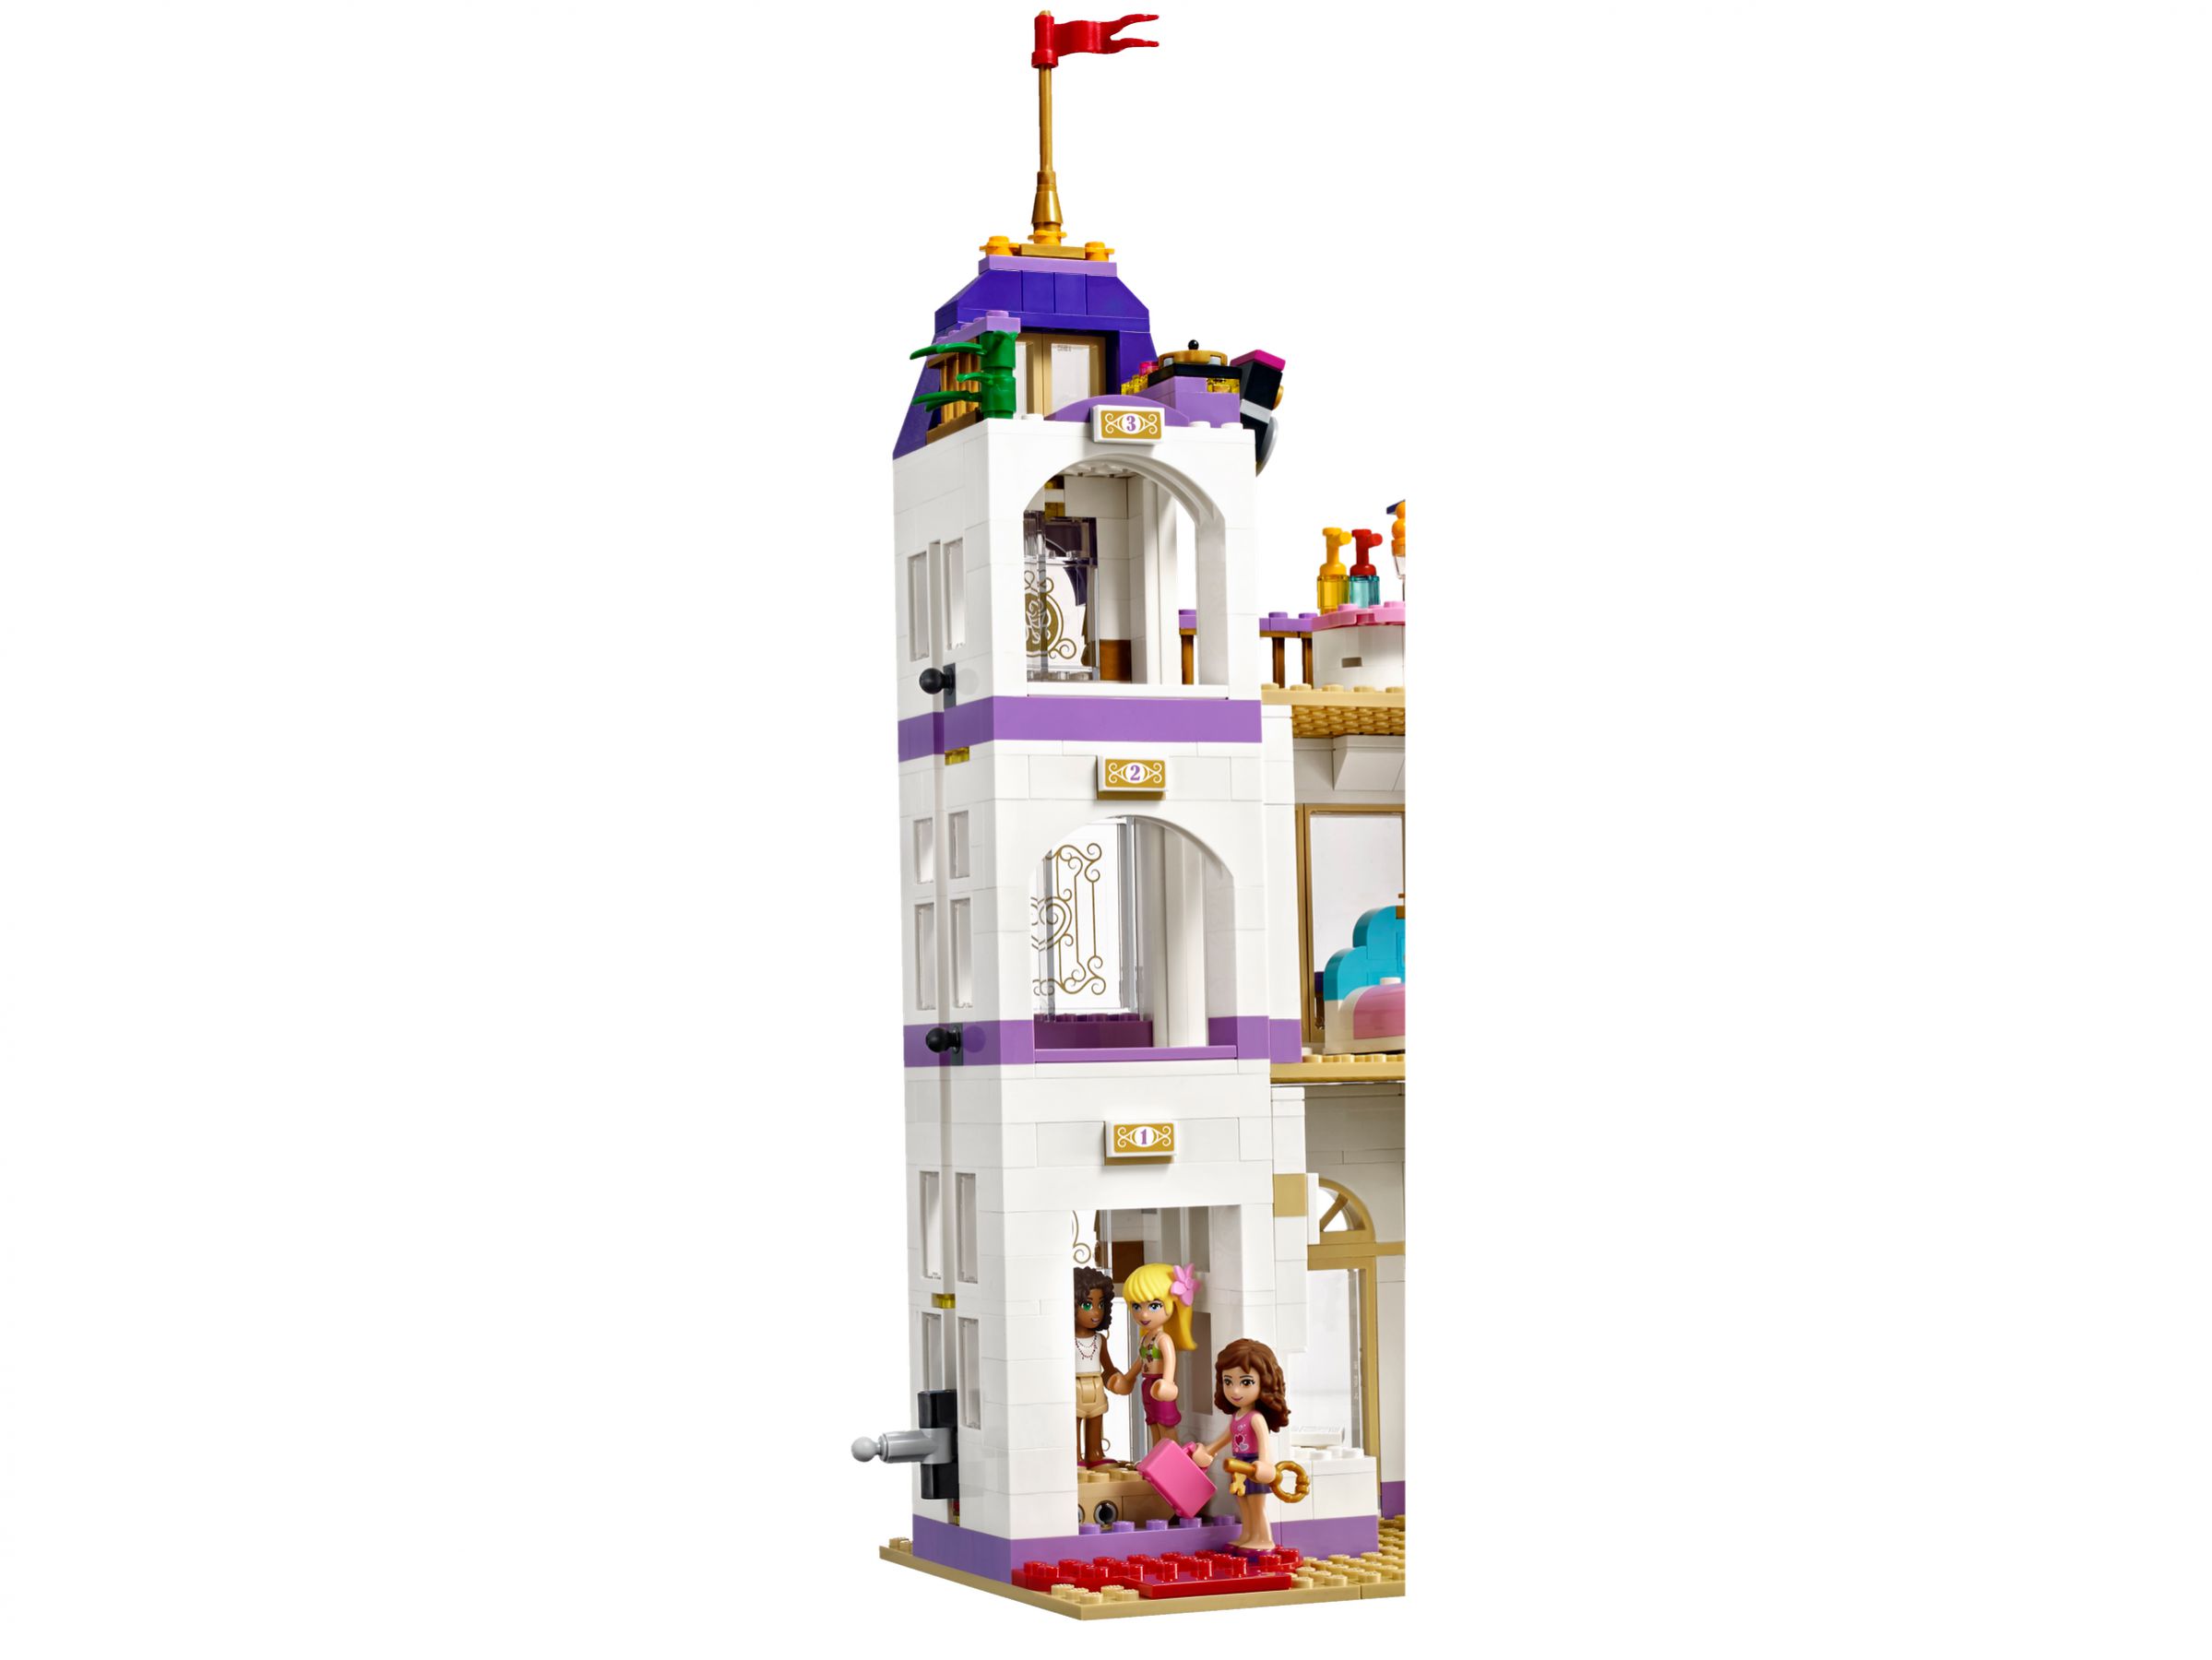 Lego Friends Heartlake Grosses Hotel 41101 2015 Lego Preisvergleich Brickmerge De